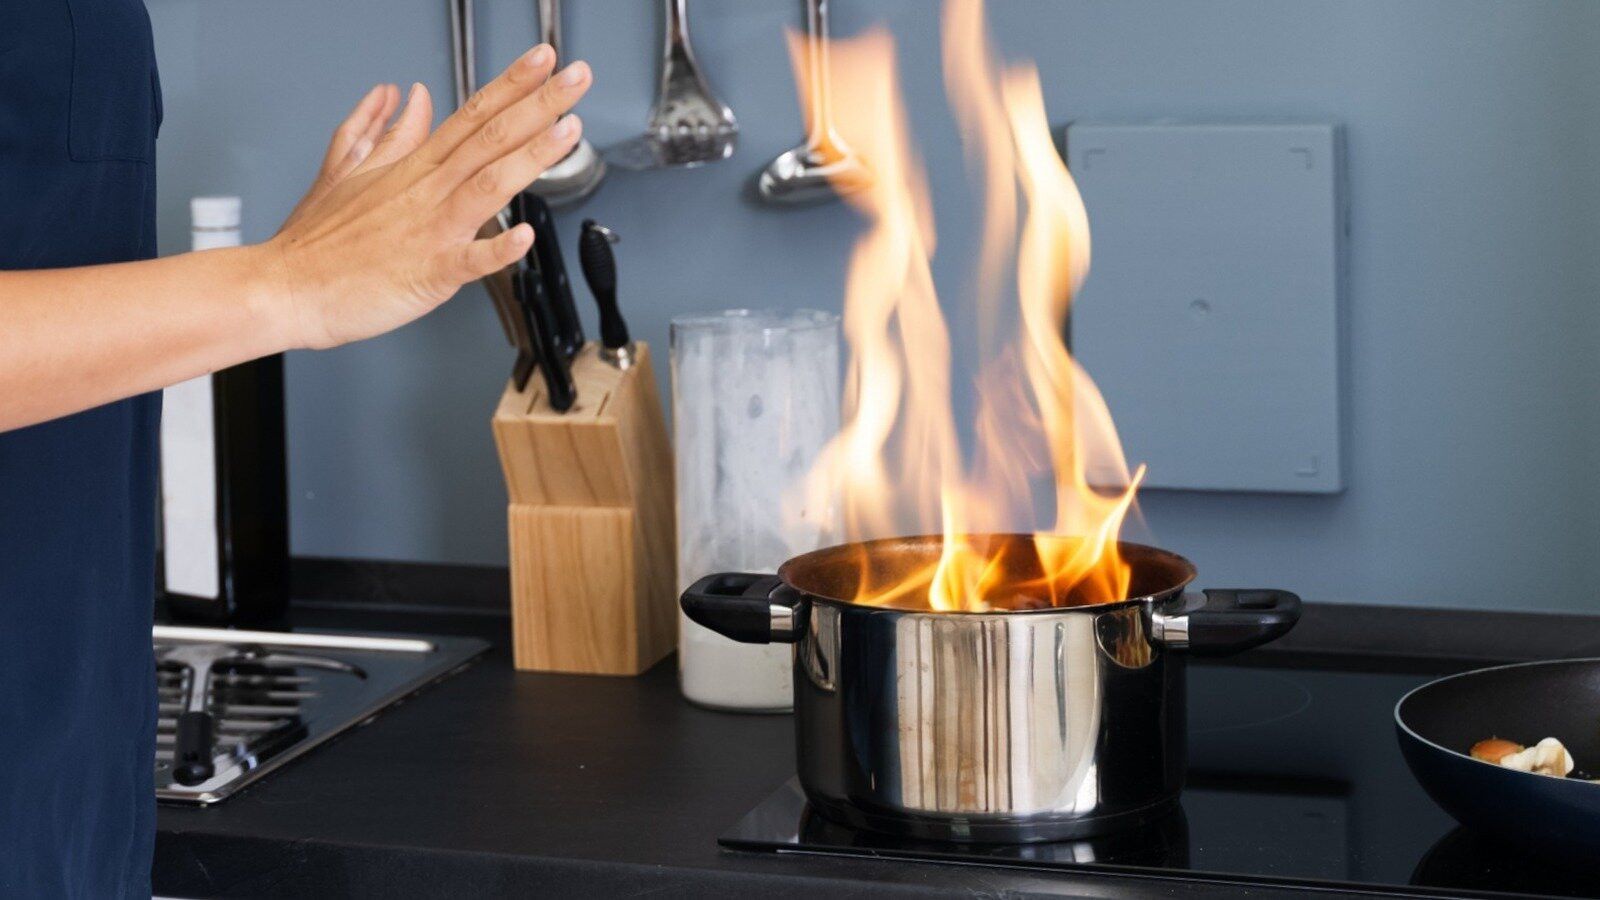 Các hộ gia đình sử dụng bếp điện có nguy cơ gặp hỏa hoạn cũng như tổn thất nặng nề hơn bếp ga. (Ảnh: House Digest)